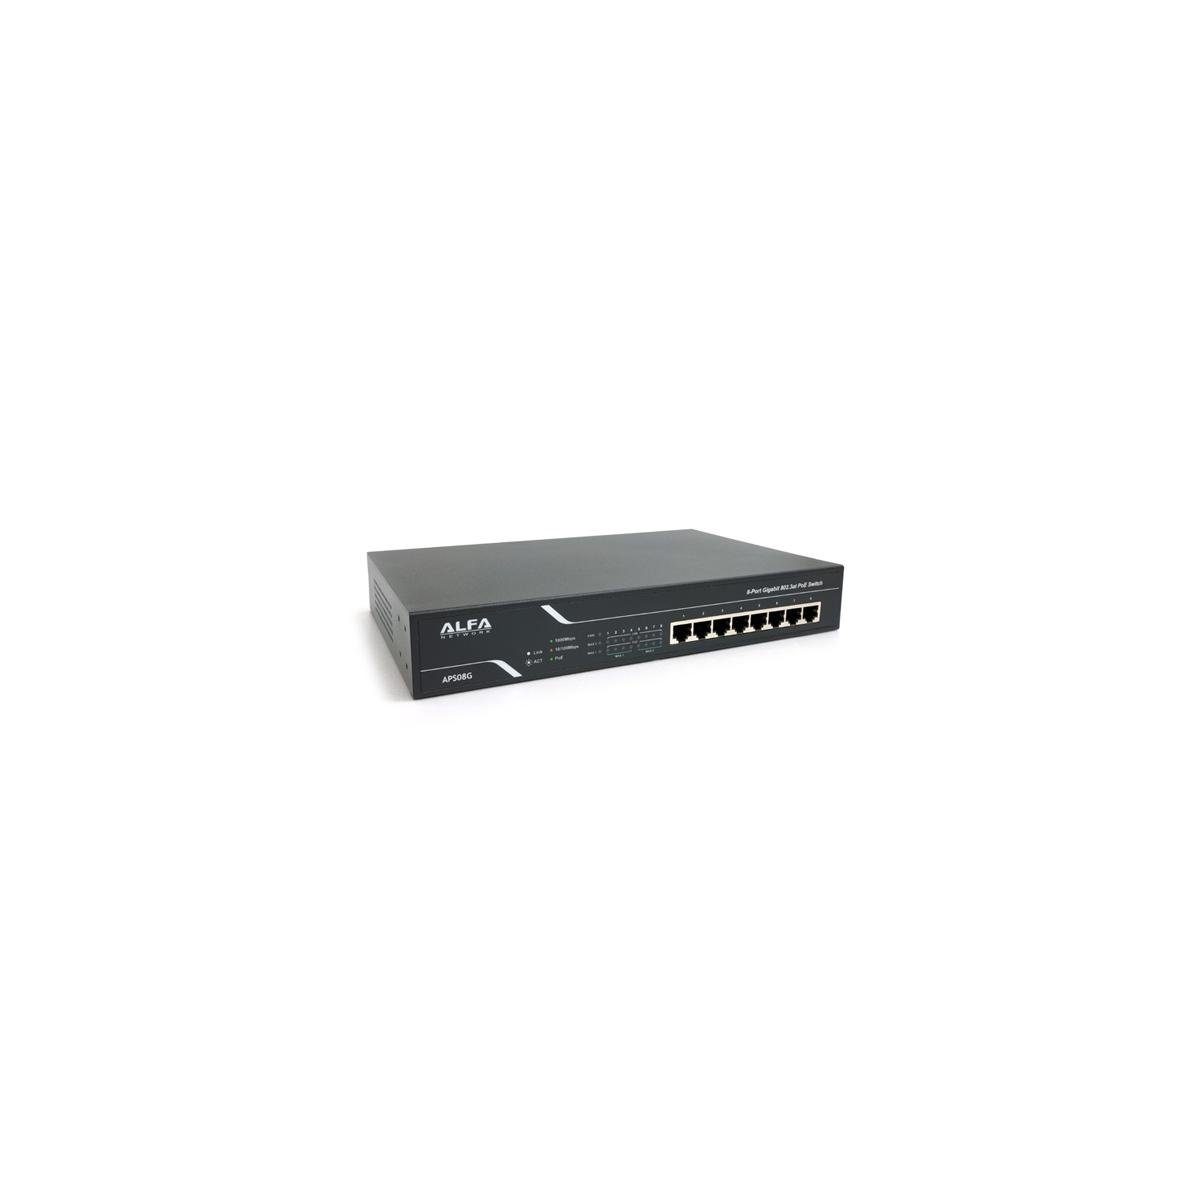 Alfa APS08G - 8-Port Gigabit 802.3at PoE Desktop Switch Netzwerk-Switch